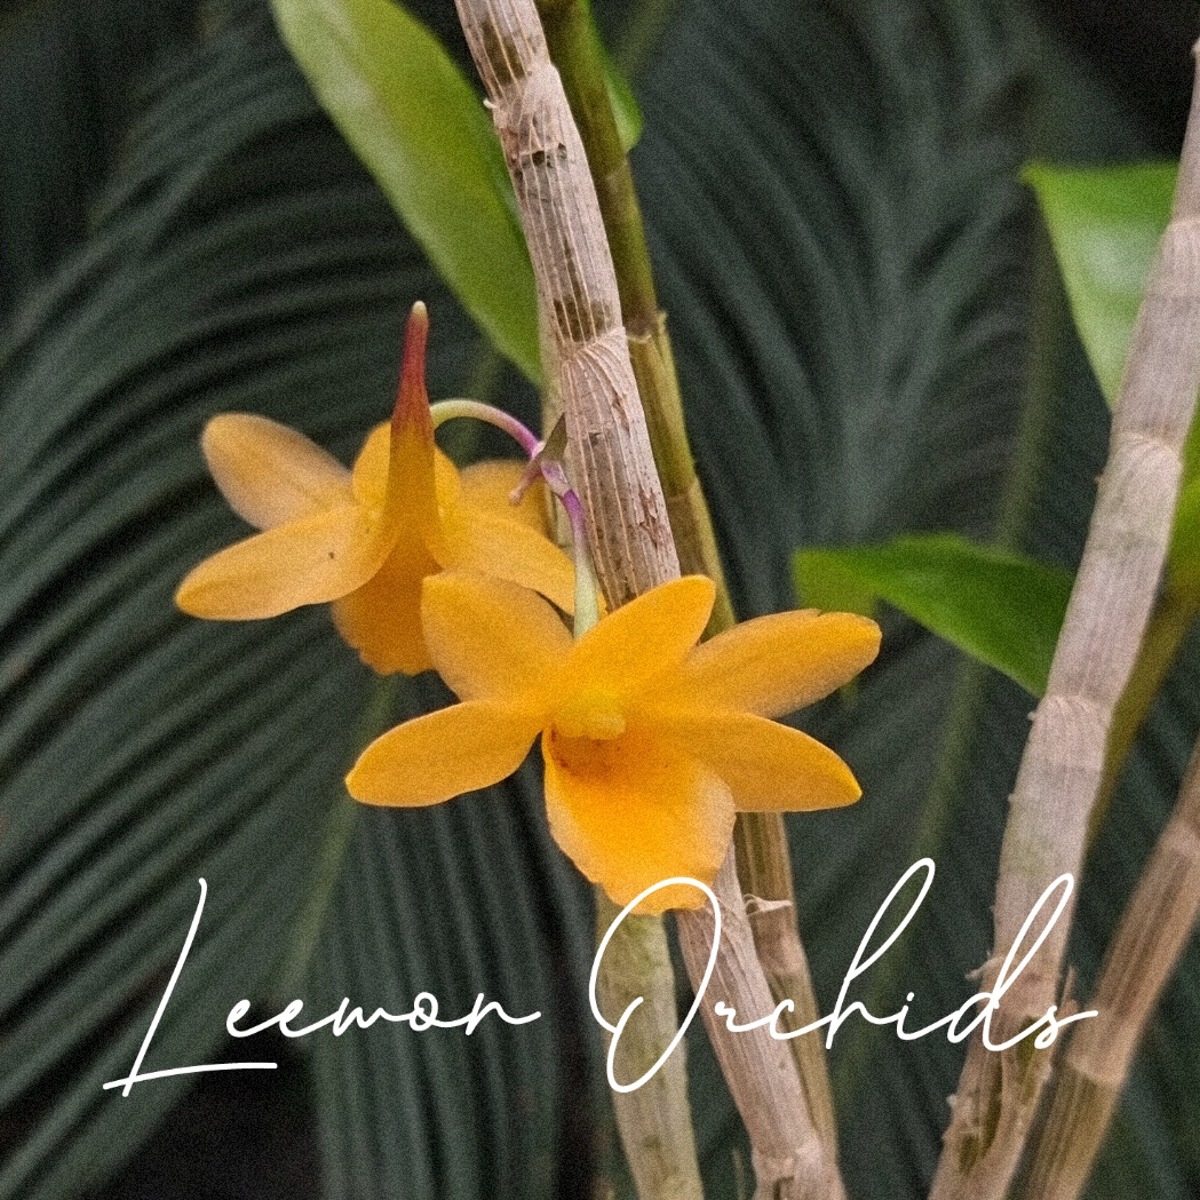 덴드로비움 씨얼아이넘 Dendrobium cerinum (온라인 한정재고: 1)